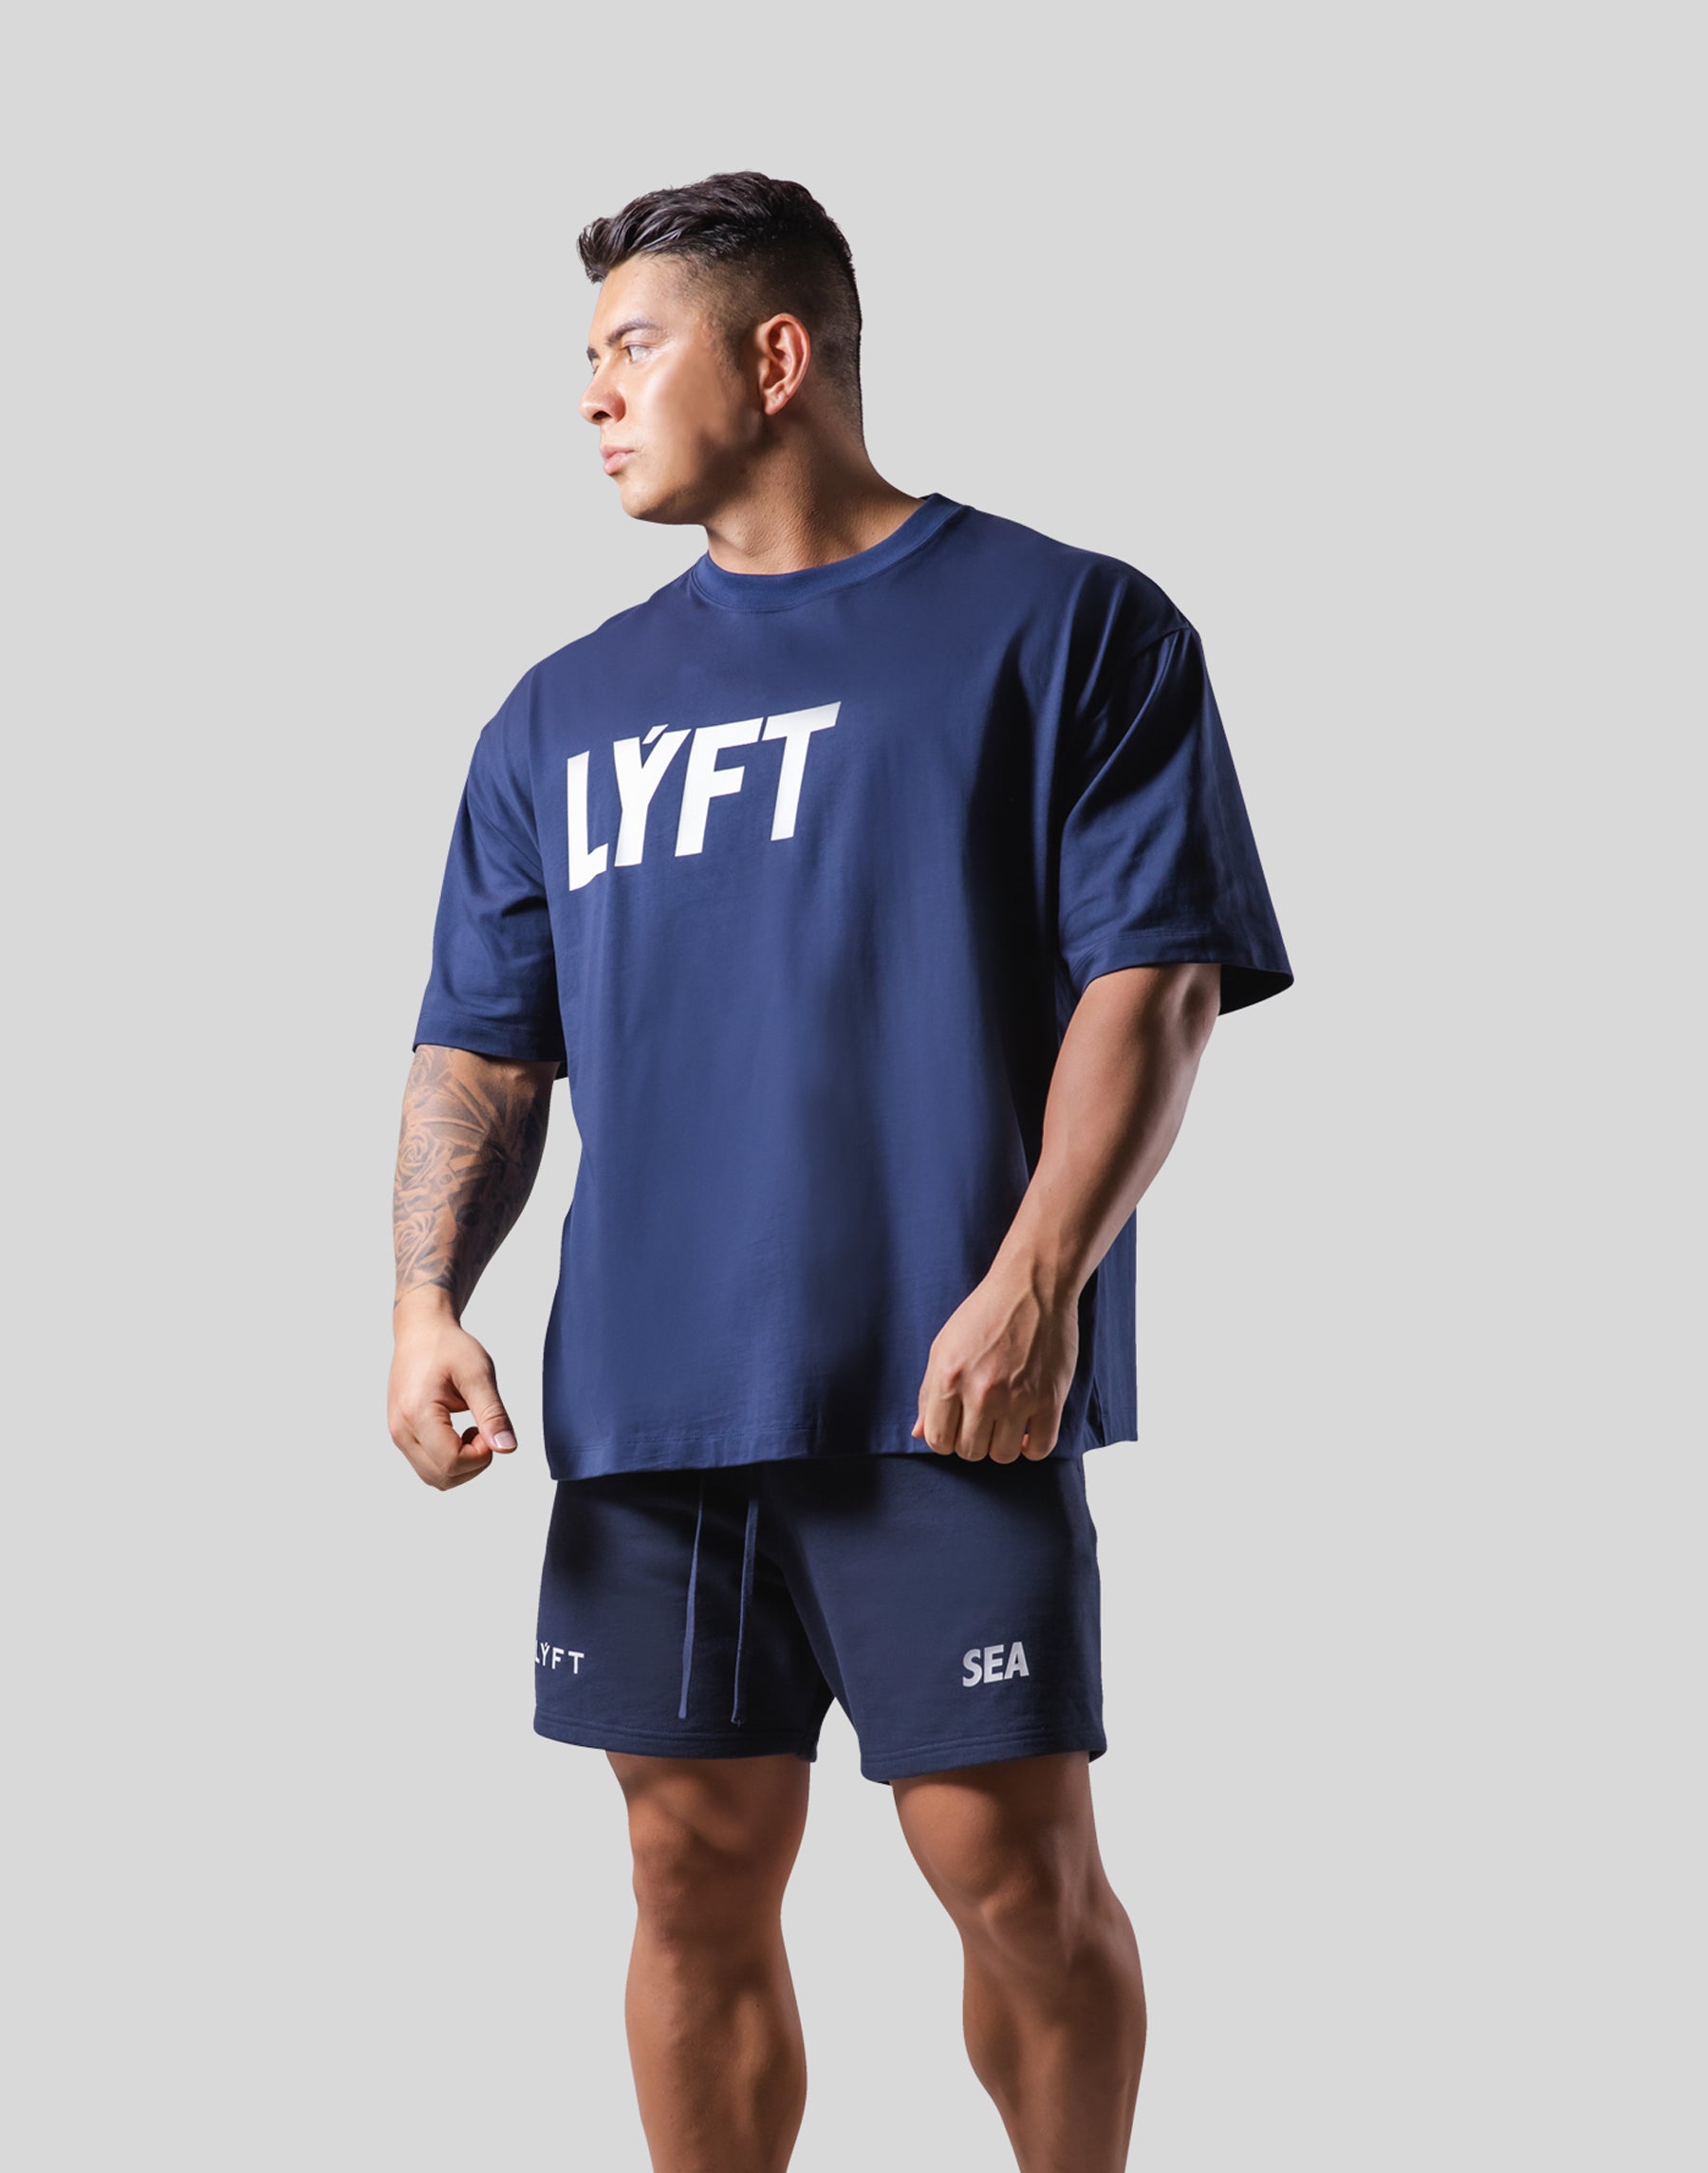 LYFT WIND AND SEA ネイビー 半袖TシャツWINDANDSEA - Tシャツ